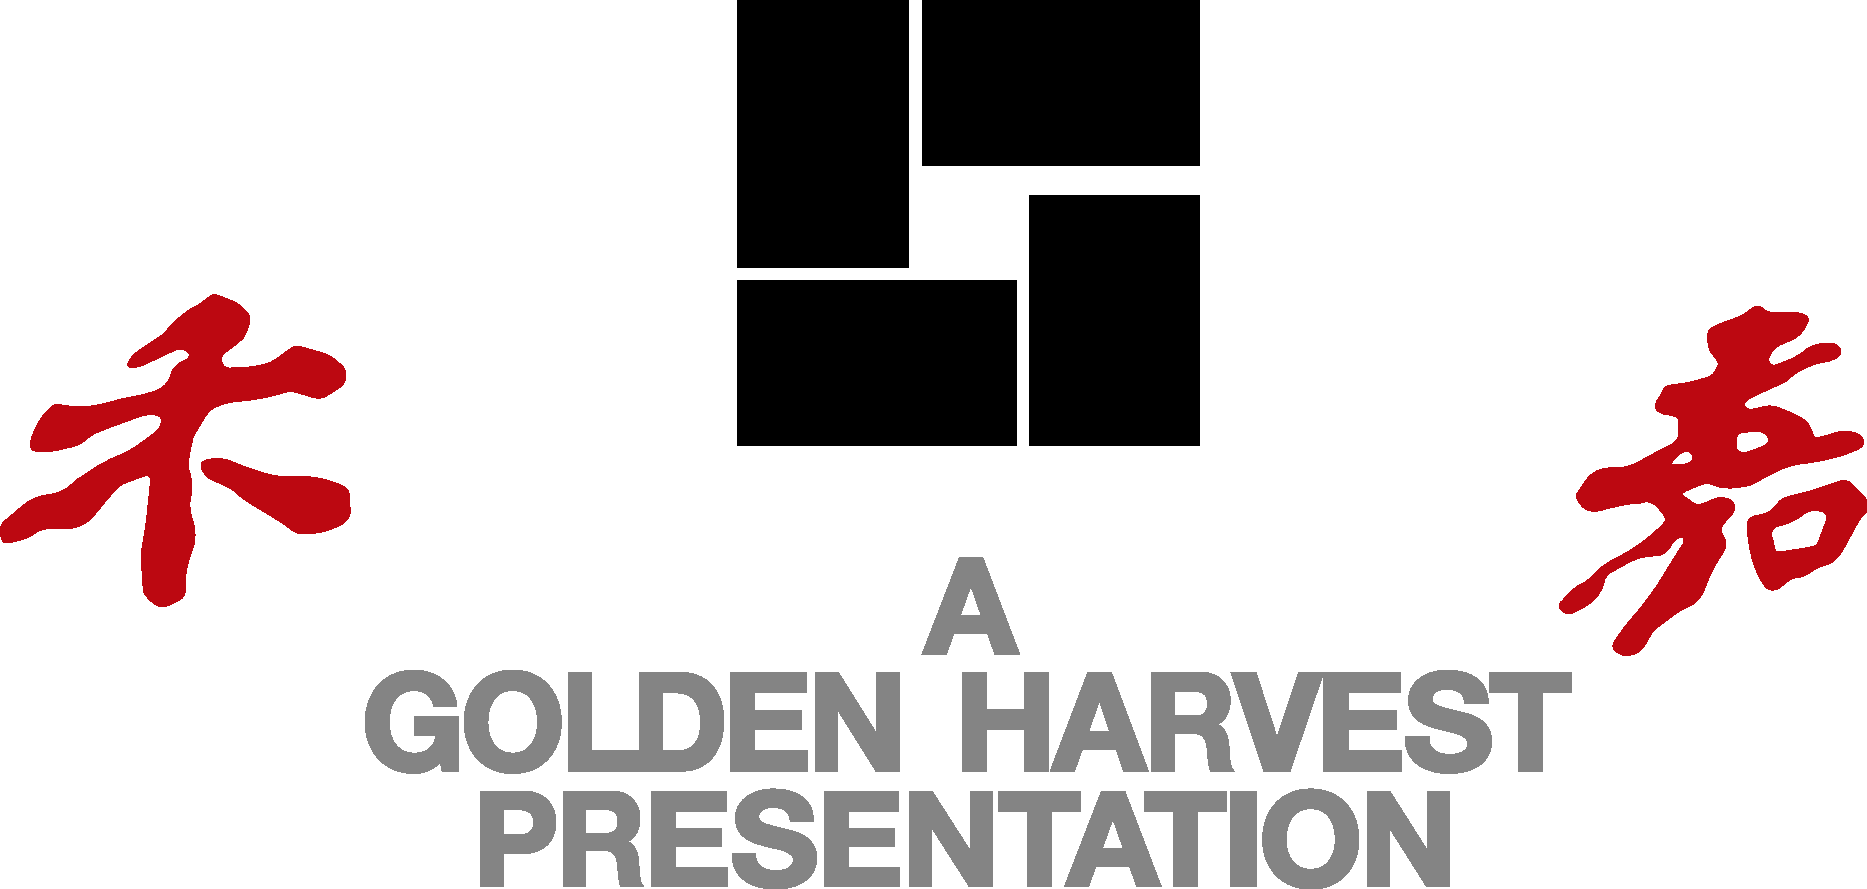 golden harvest presentation logo